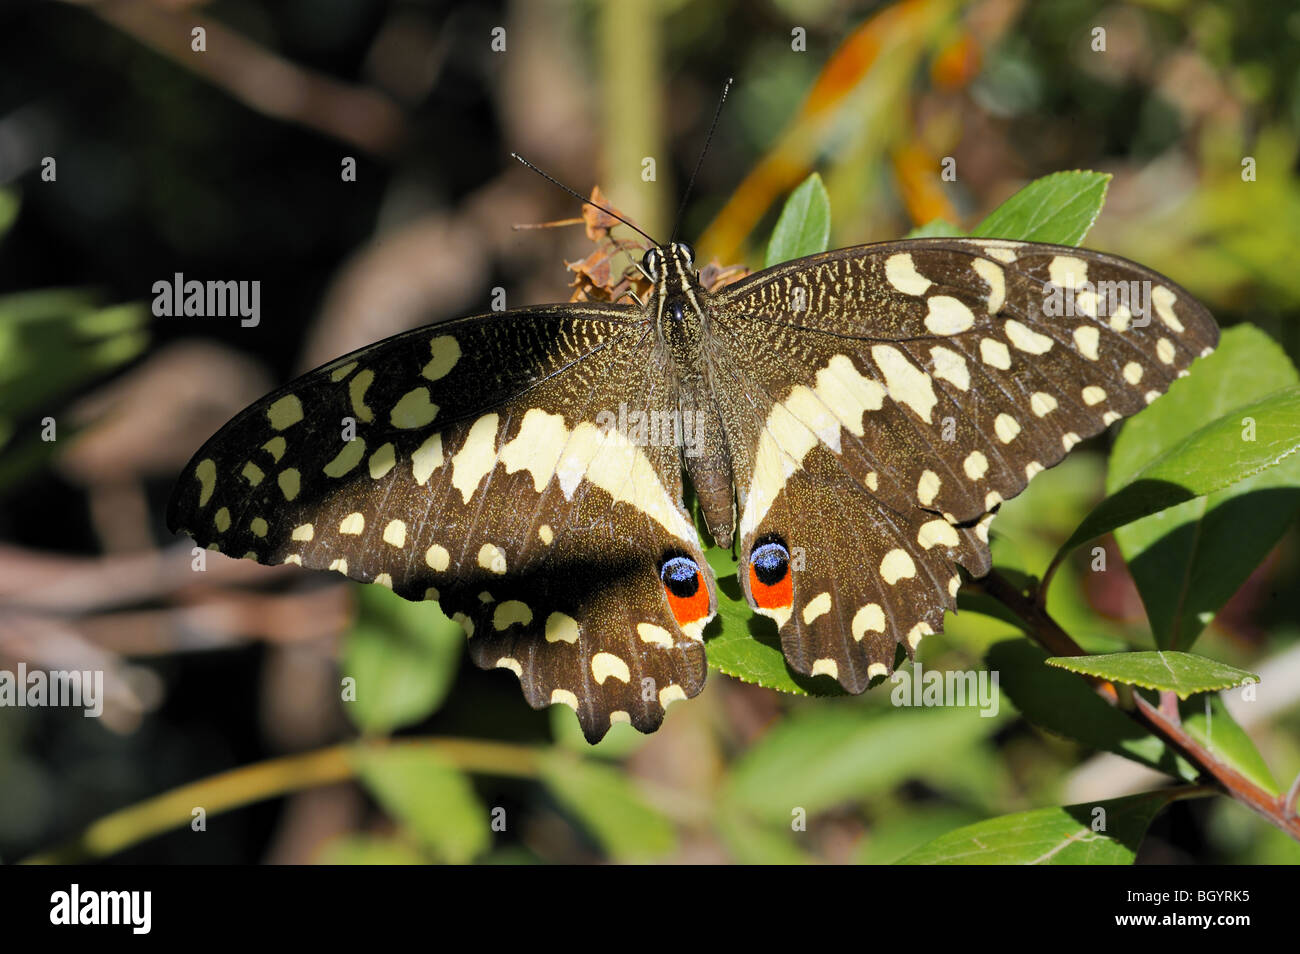 Sưu tập Bộ cánh vẩy 2 - Page 64 Bush-kite-or-ctirus-swallowtail-butterfly-BGYRK5